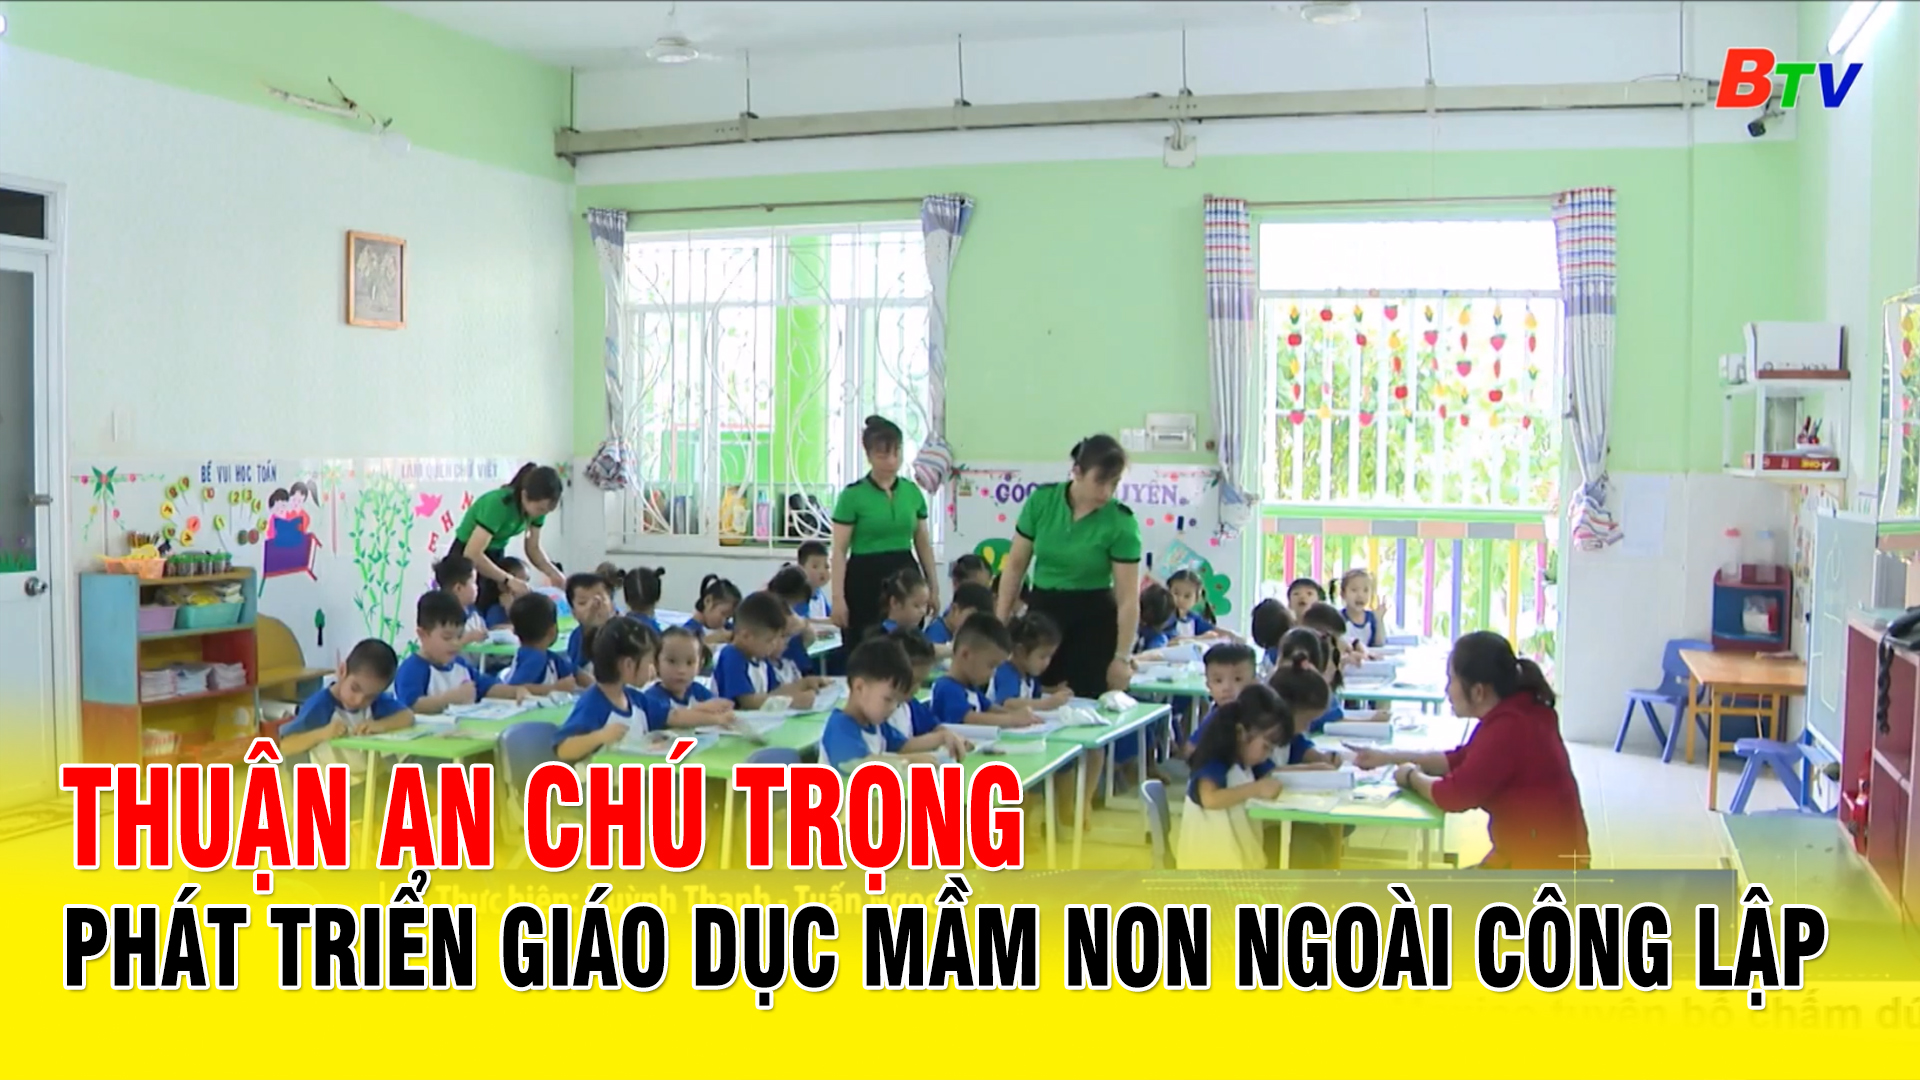 Thuận An chú trọng phát triển giáo dục mầm non ngoài công lập